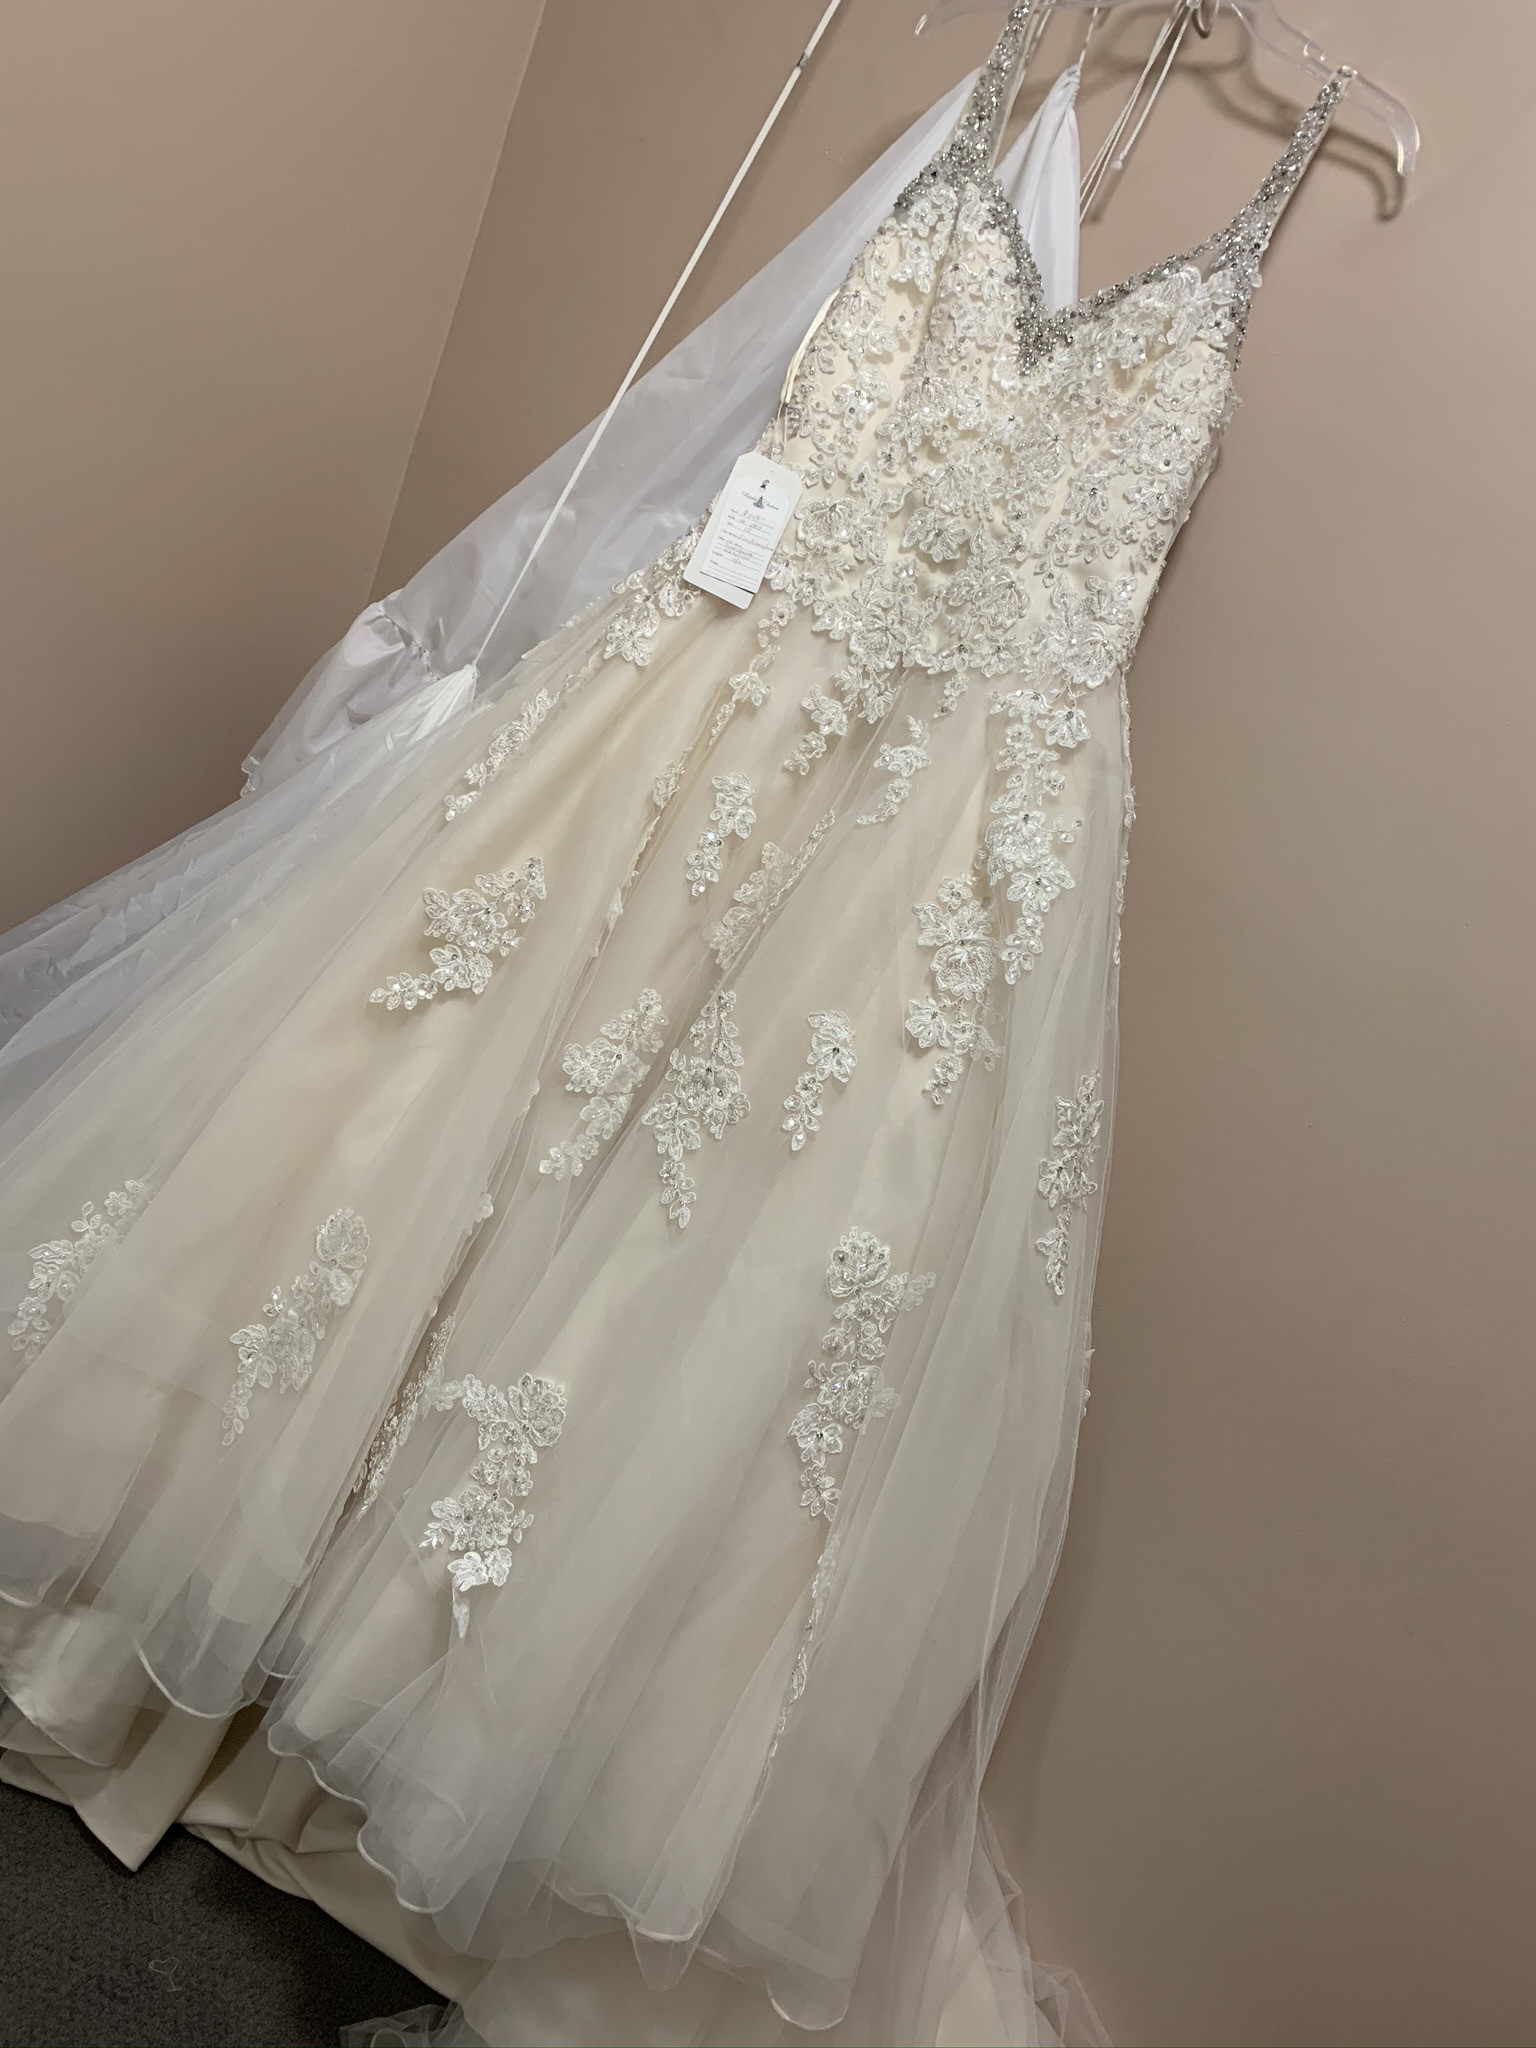 Morilee 2811 Sample Wedding Dress - Stillwhite